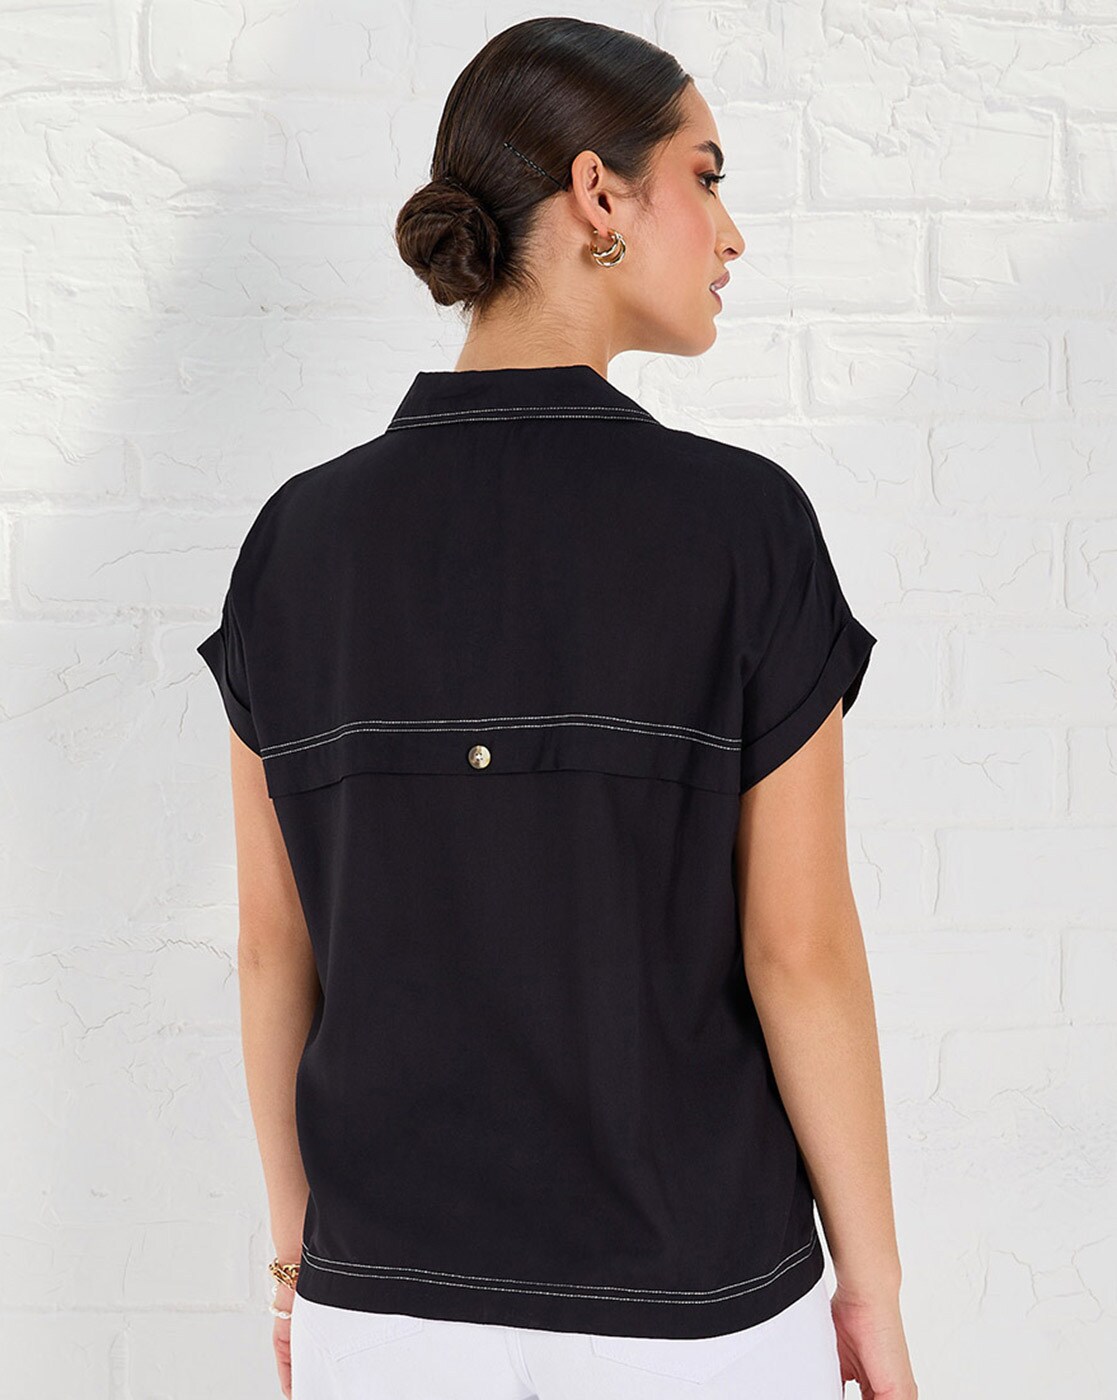 Lucky Brand Womens Utility Button Up Shirt, Black, Medium